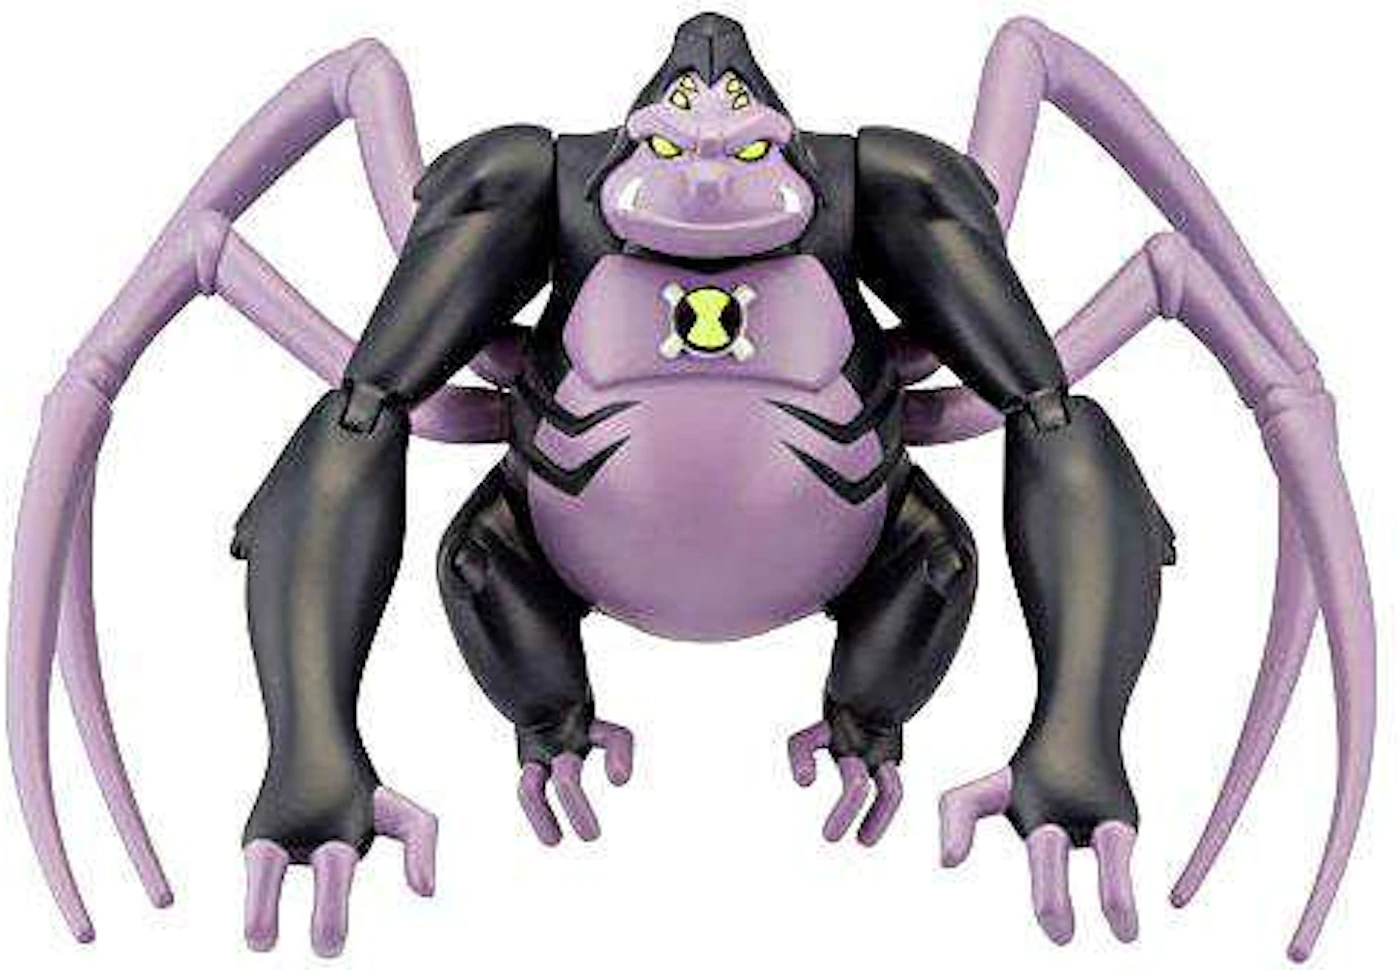 Boneco Ben 10 - Ultimate Aliens Colecionáveis - Macaco-Aranha Supremo -, Móvel de Antiquário Candidi-Ben-10 Usado 92618729